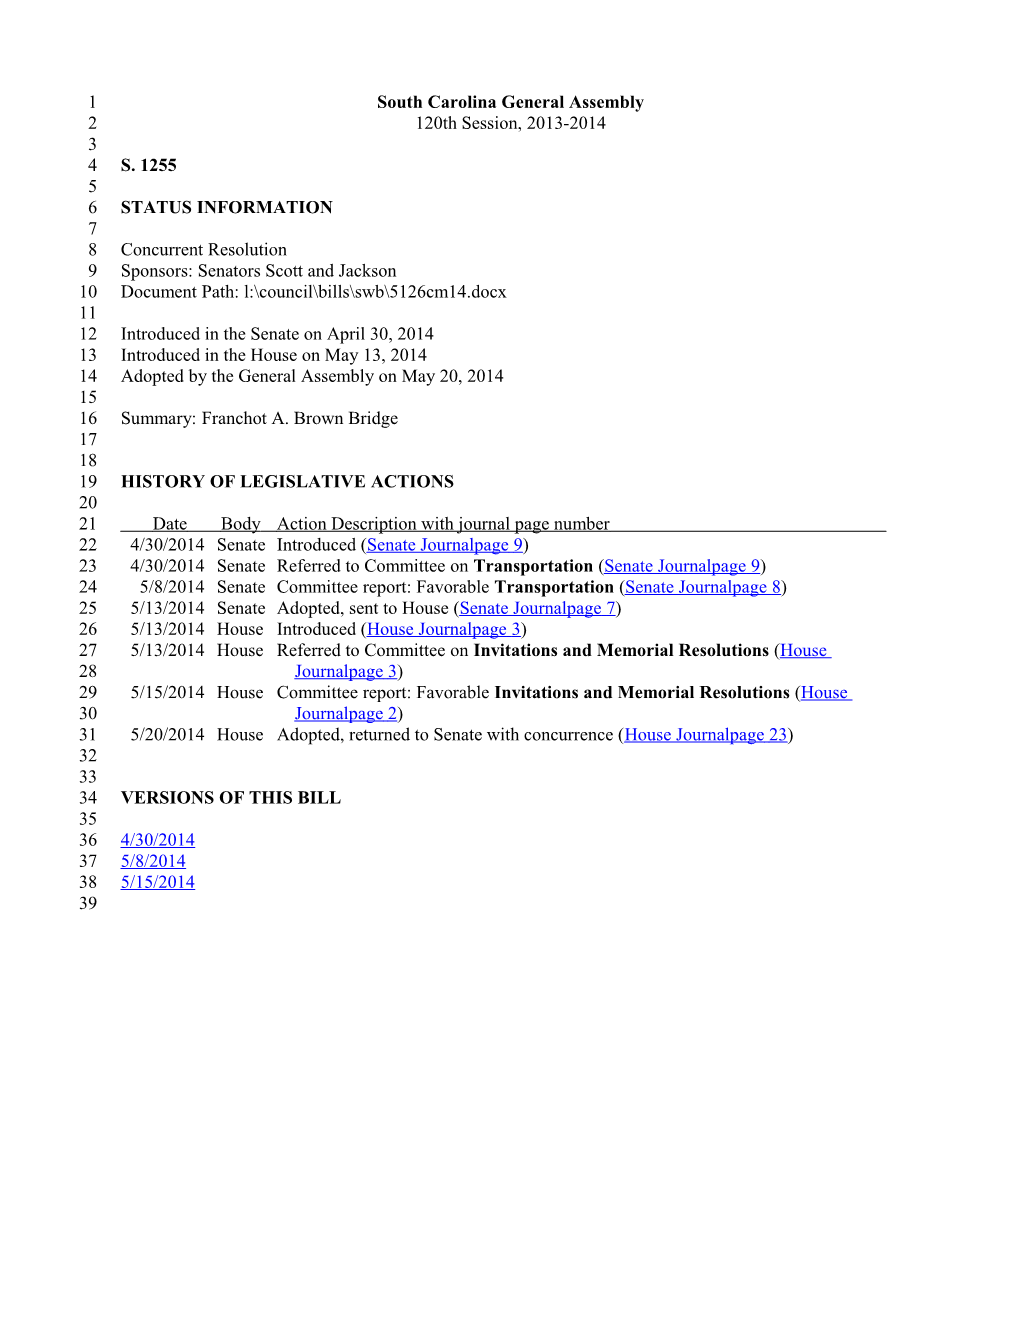 2013-2014 Bill 1255: Franchot A. Brown Bridge - South Carolina Legislature Online